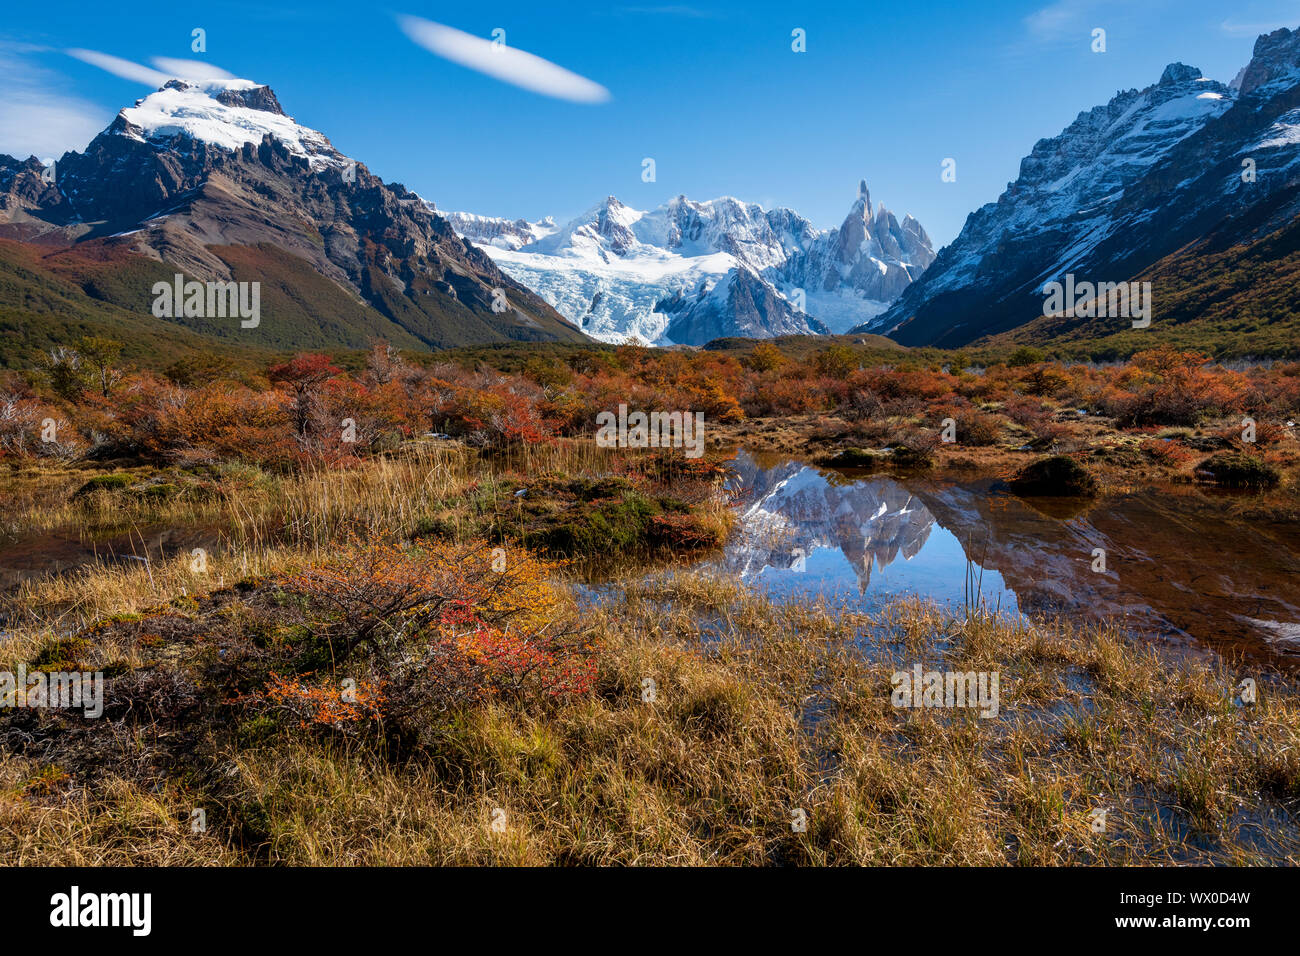 Un typique paysage de Patagonie avec le Mont Fitz Roy, El Chalten, le Parc National Los Glaciares, UNESCO World Heritage Site, Patagonie, Argentine Banque D'Images